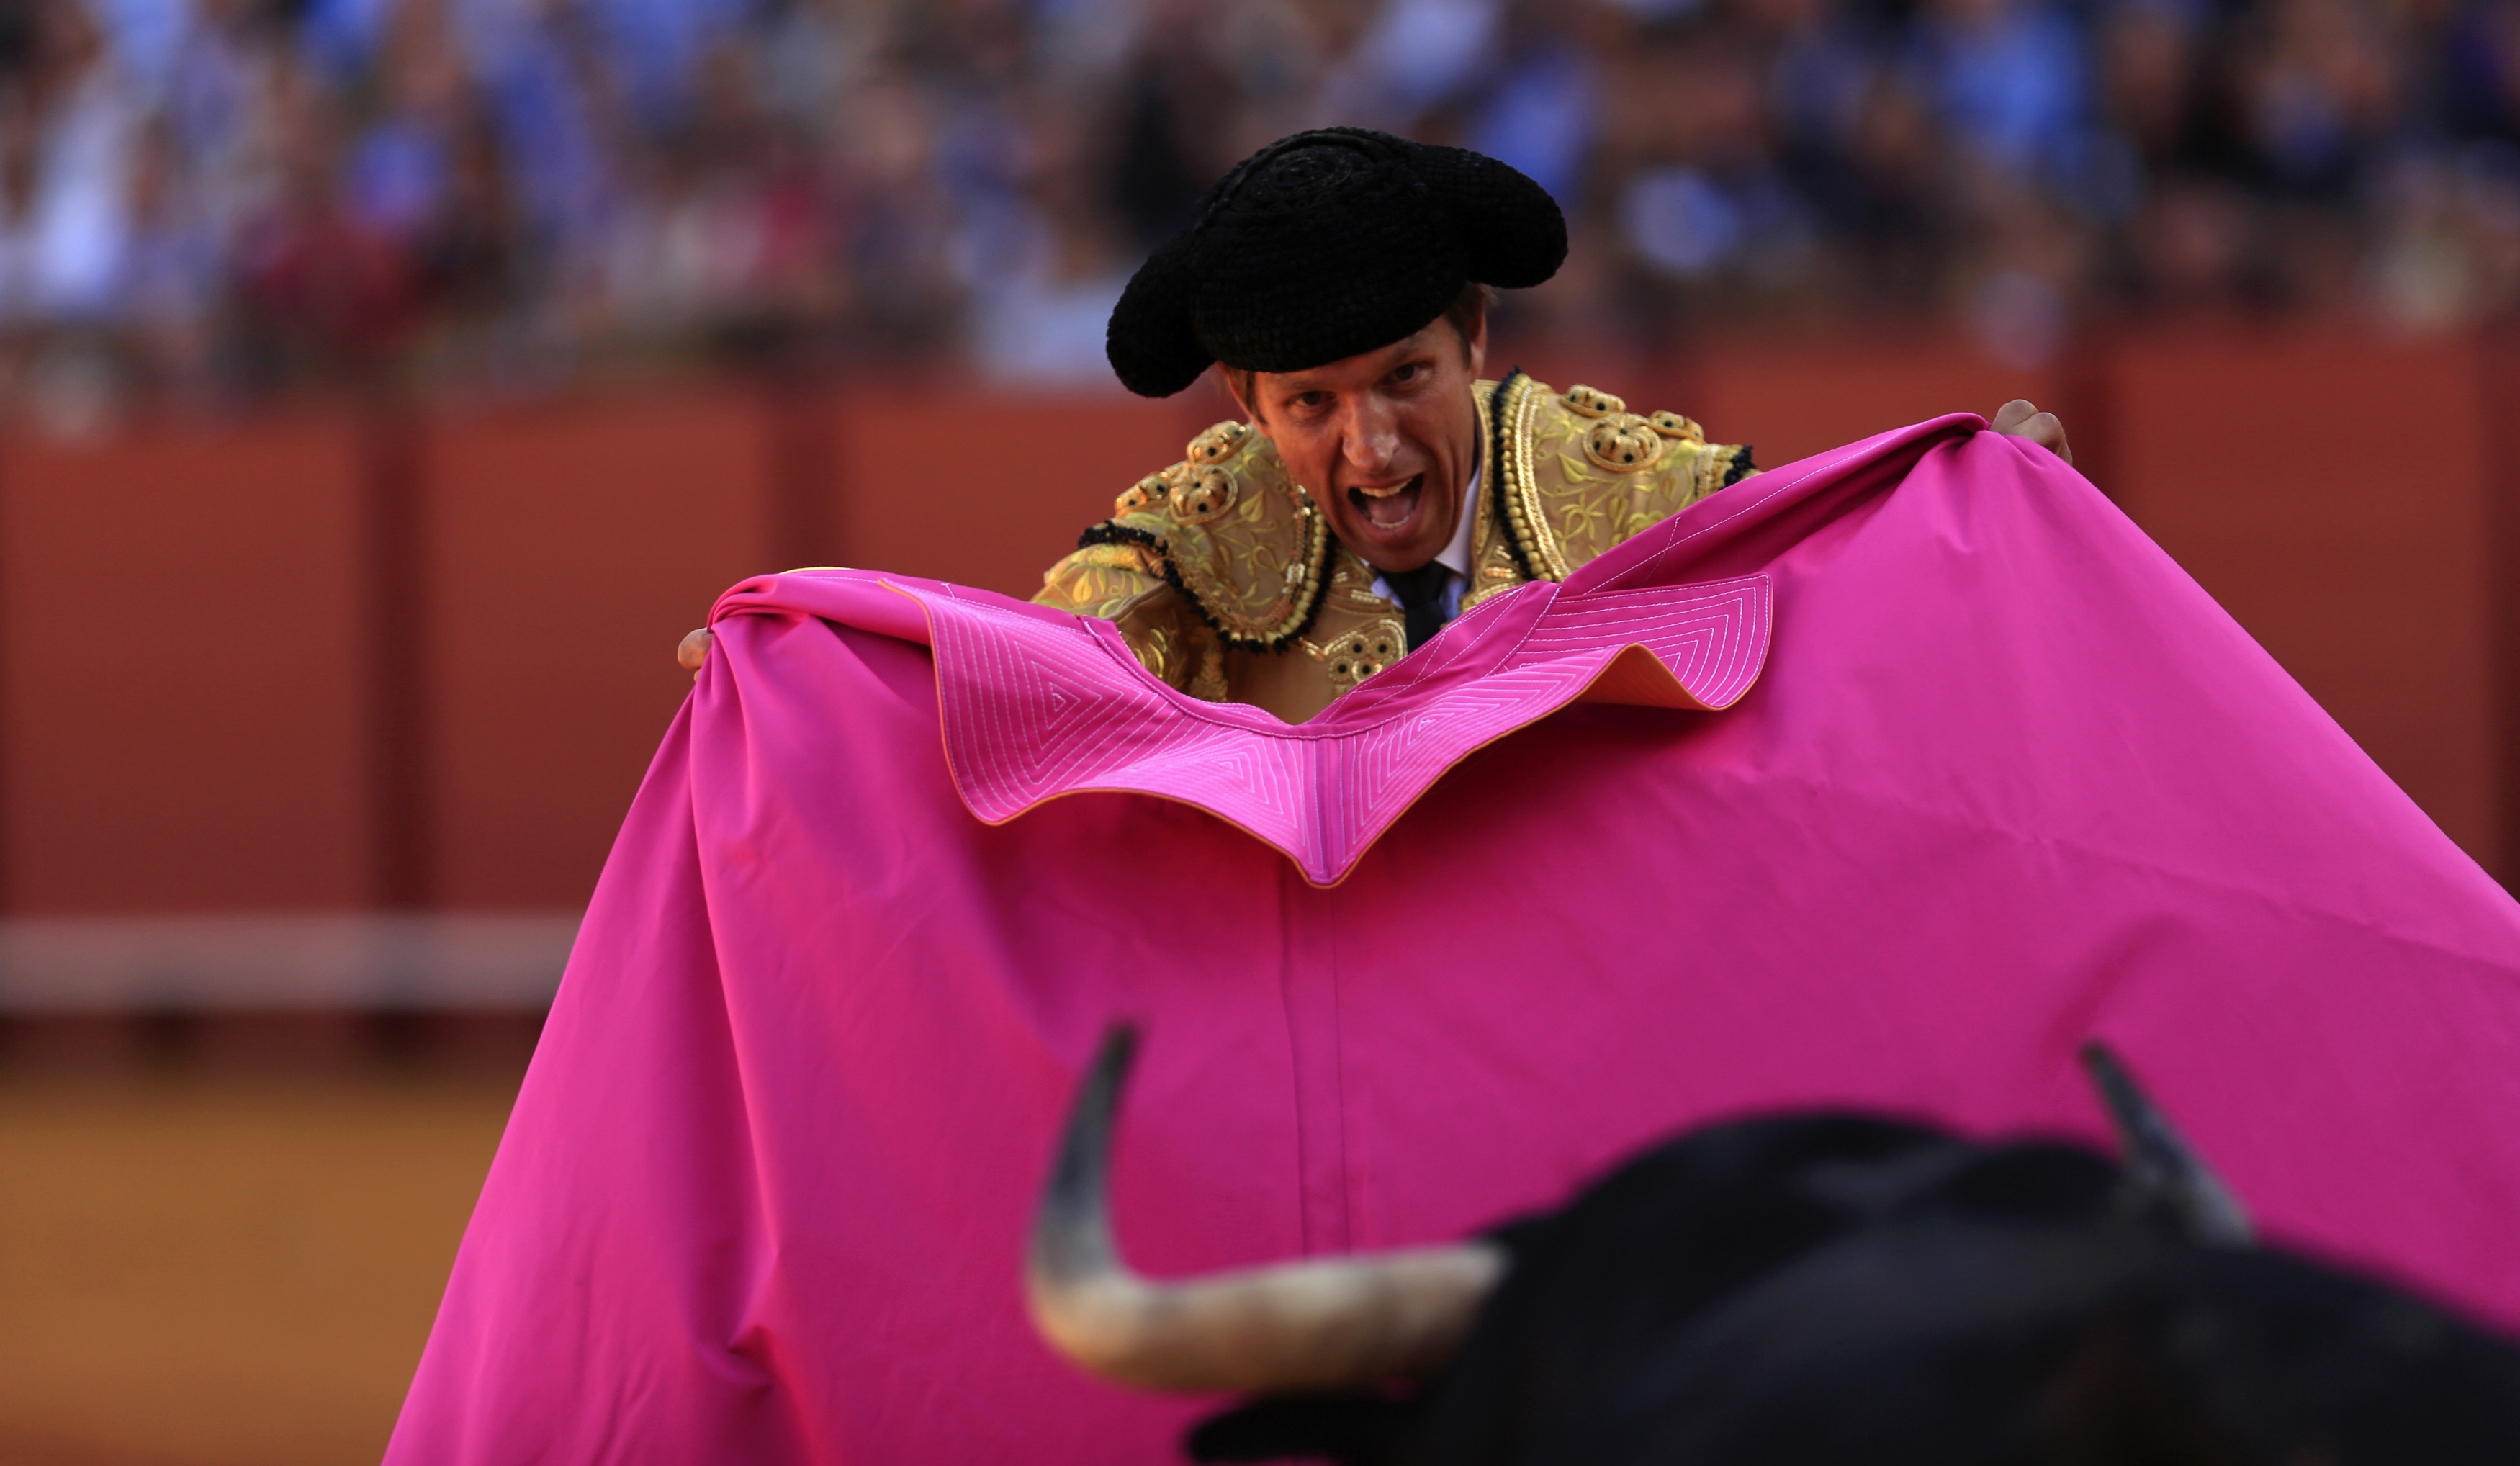 AnimaNaturalis exposes the cruelty of bullfighting